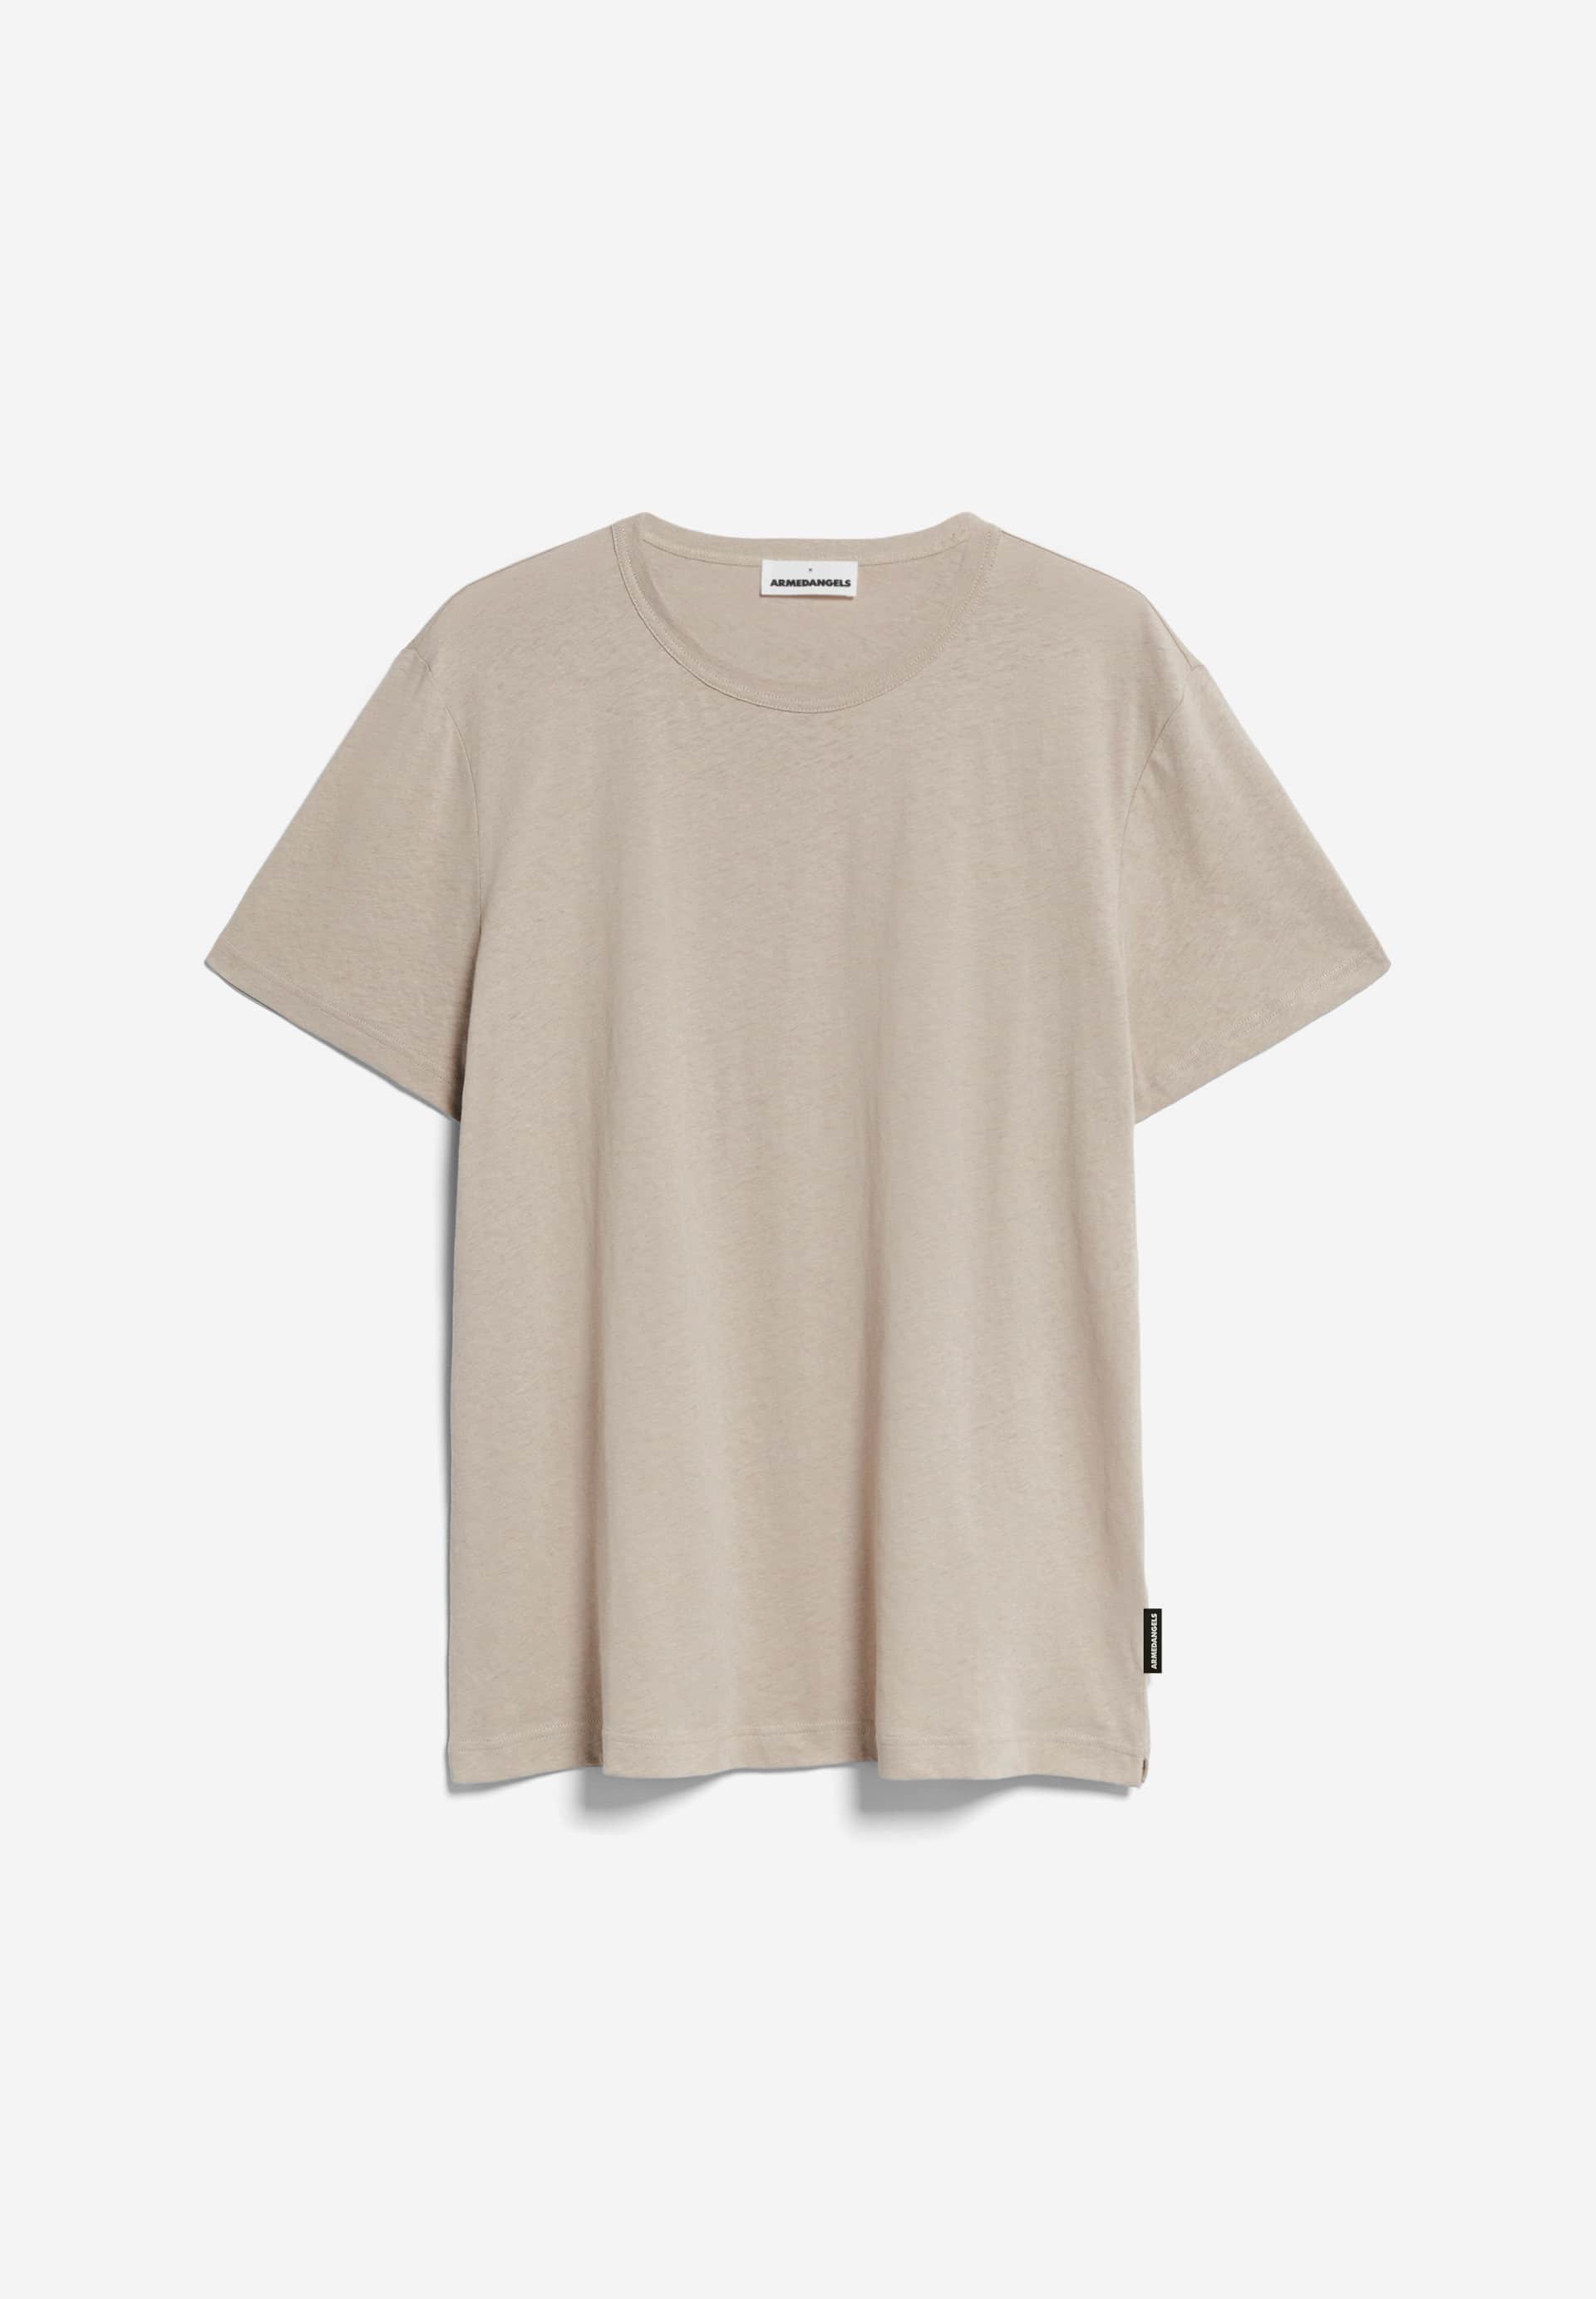 KOLMAARO LINEN T-Shirt Relaxed Fit made of Linen-Mix